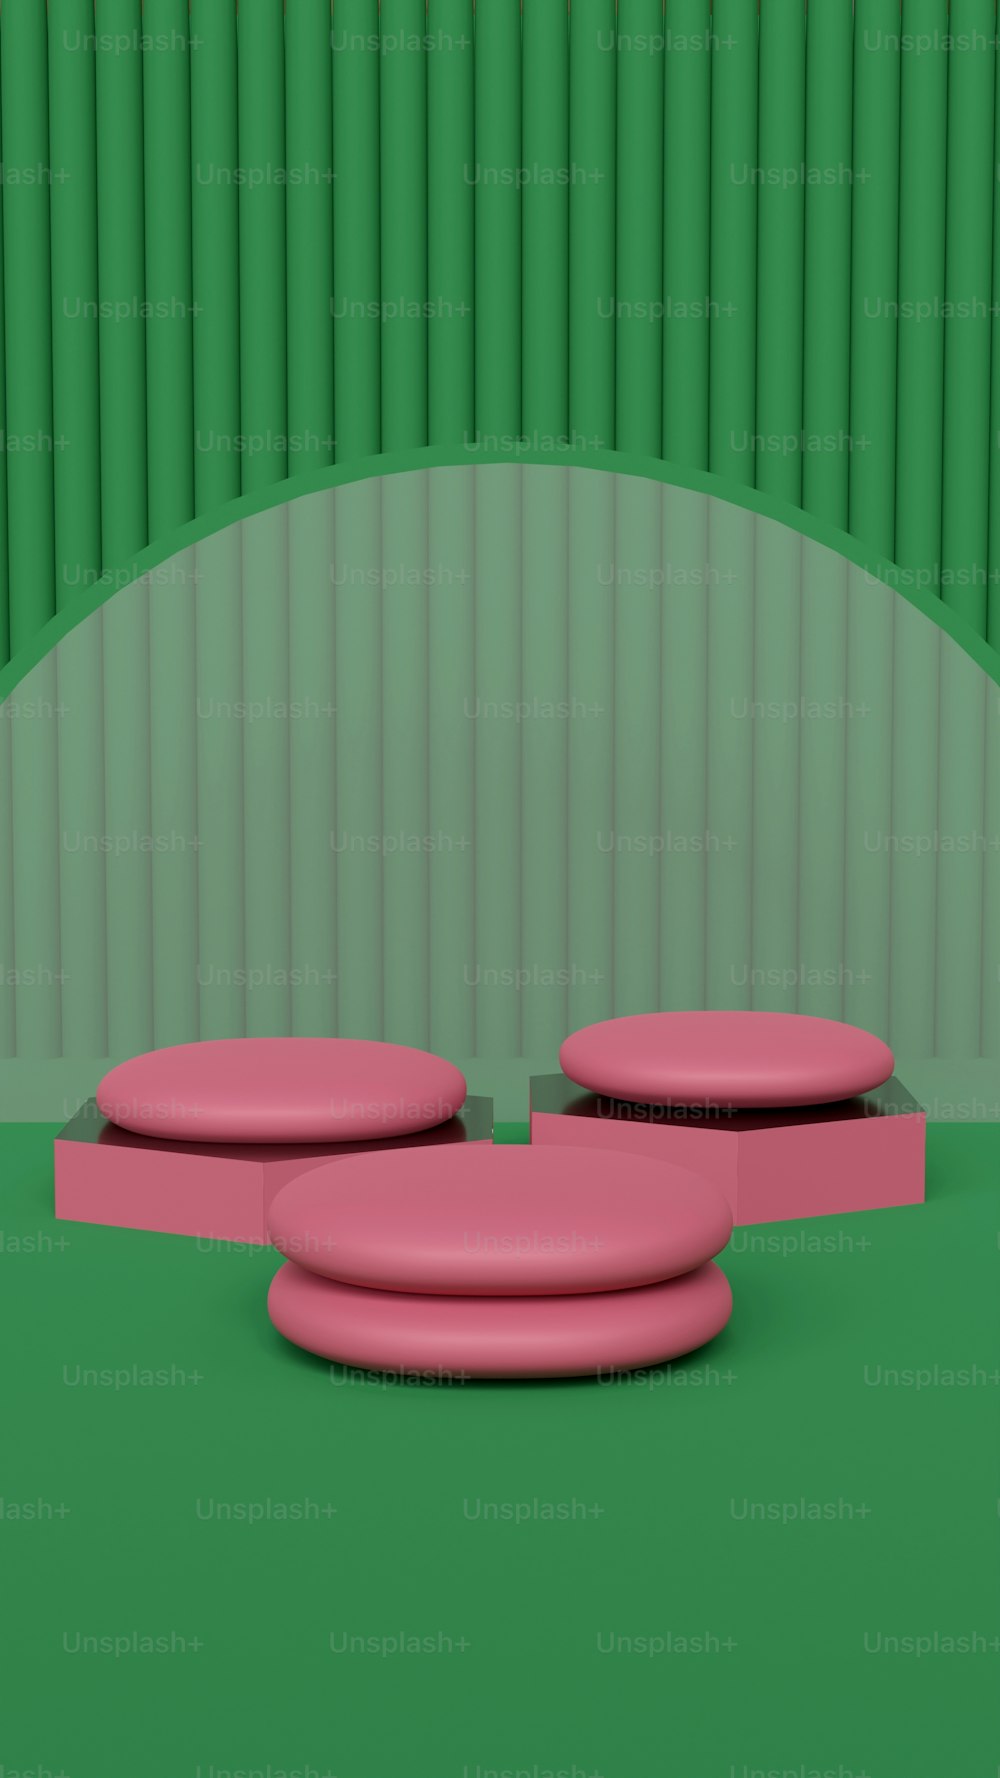 Un objeto rosa sentado encima de un suelo verde